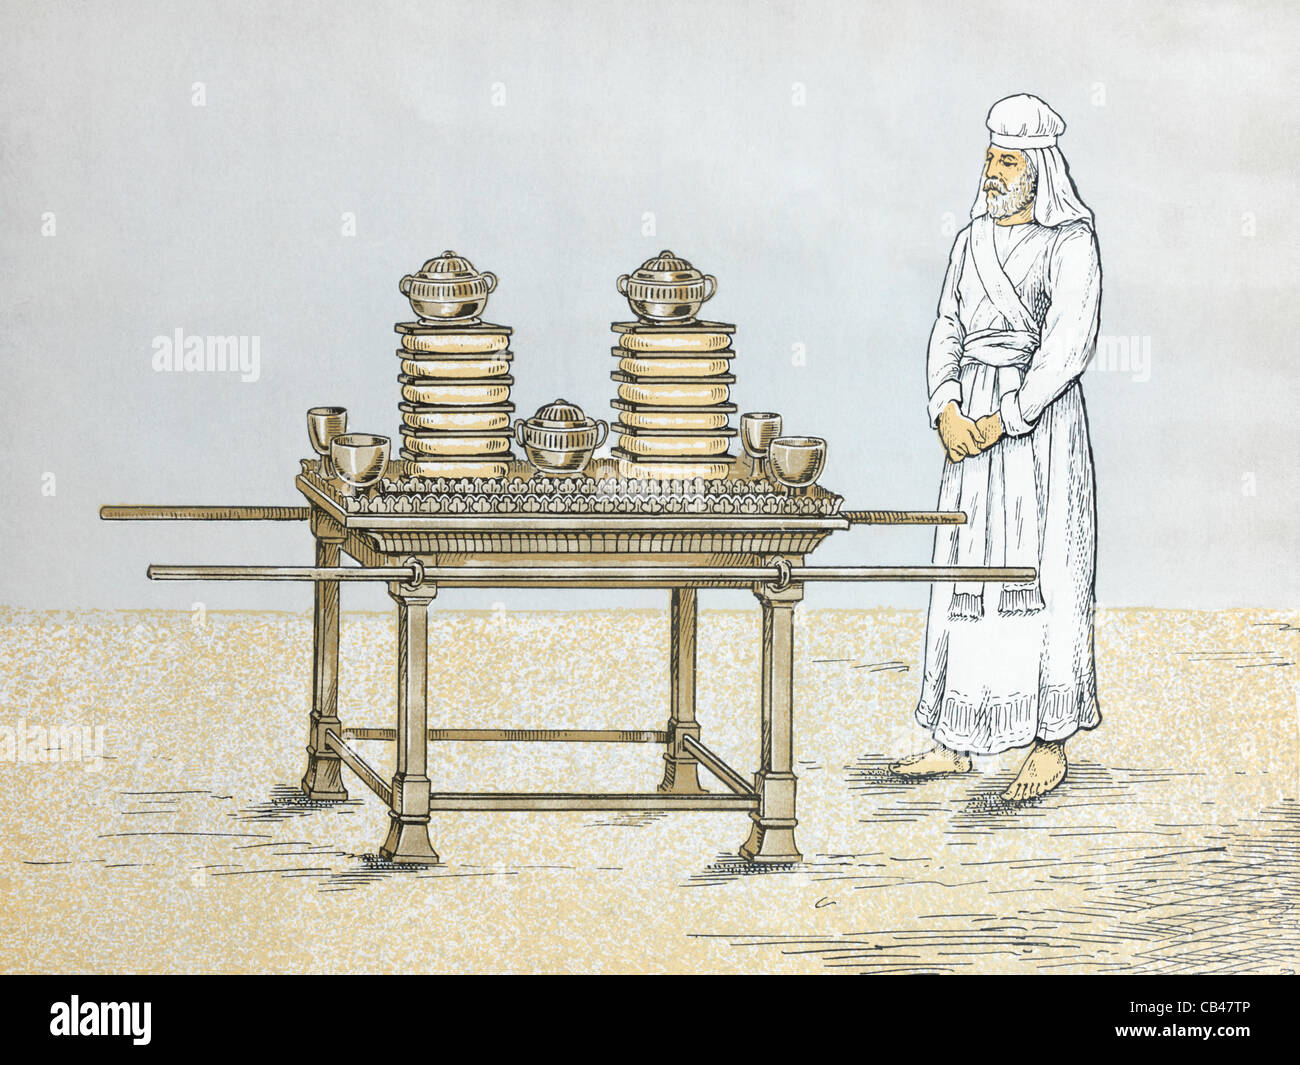 Eine Illustration des Hohepriesters, der neben dem Tisch des Schafbrotes steht - 12 Brotlieder, die die 12 Stämme Israels repräsentieren Stockfoto